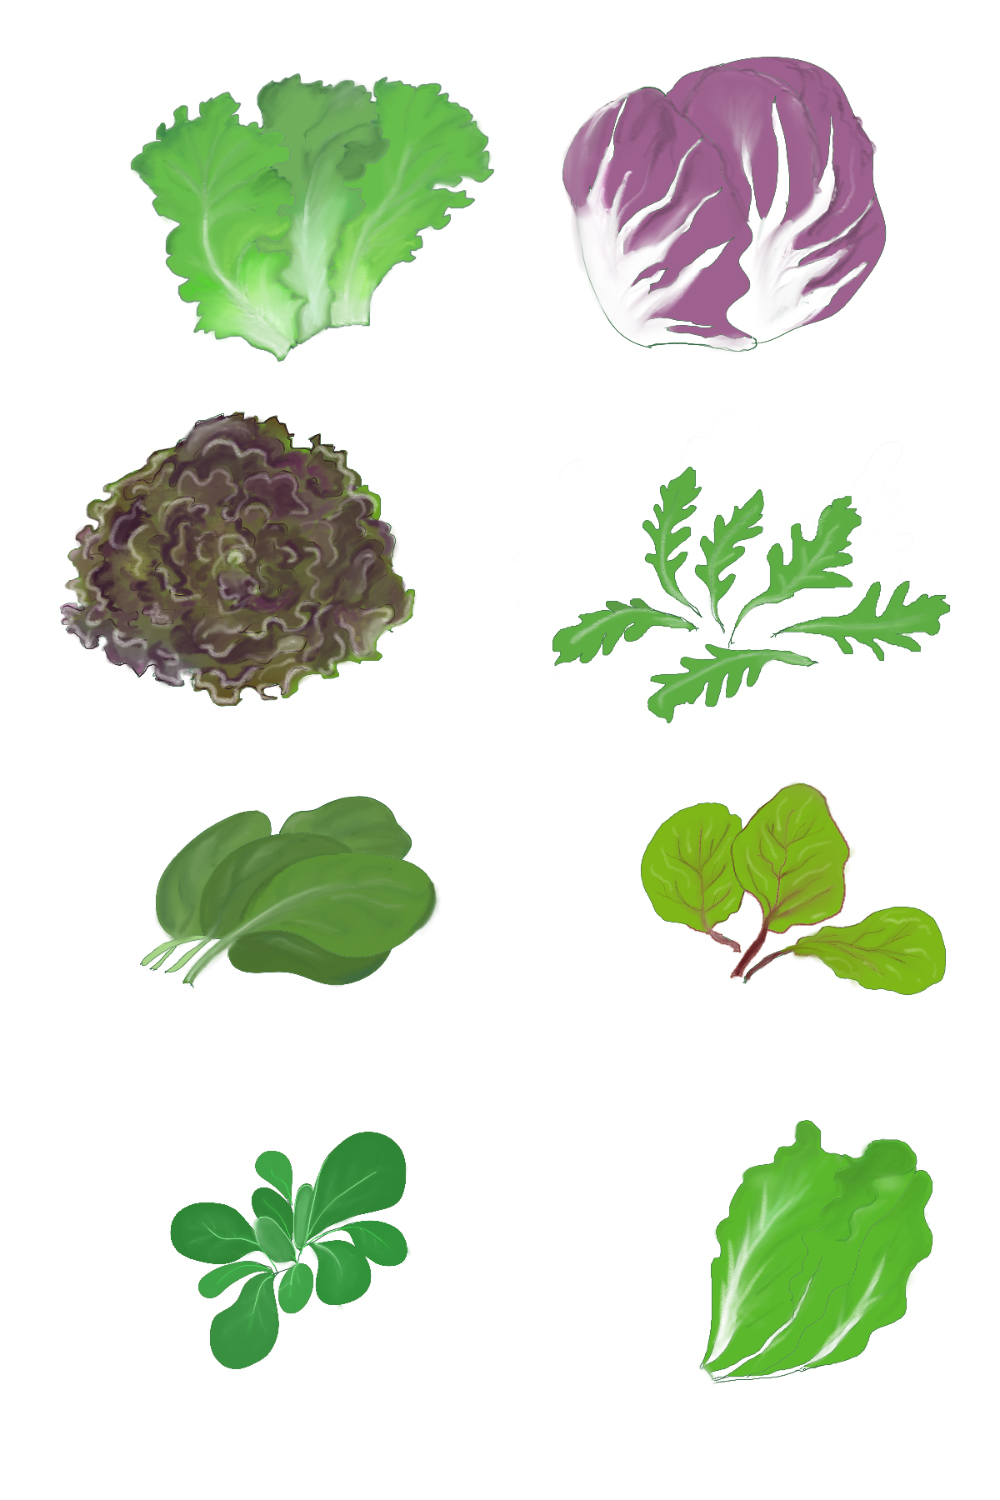 lettuce, leaves pinterest preview image.